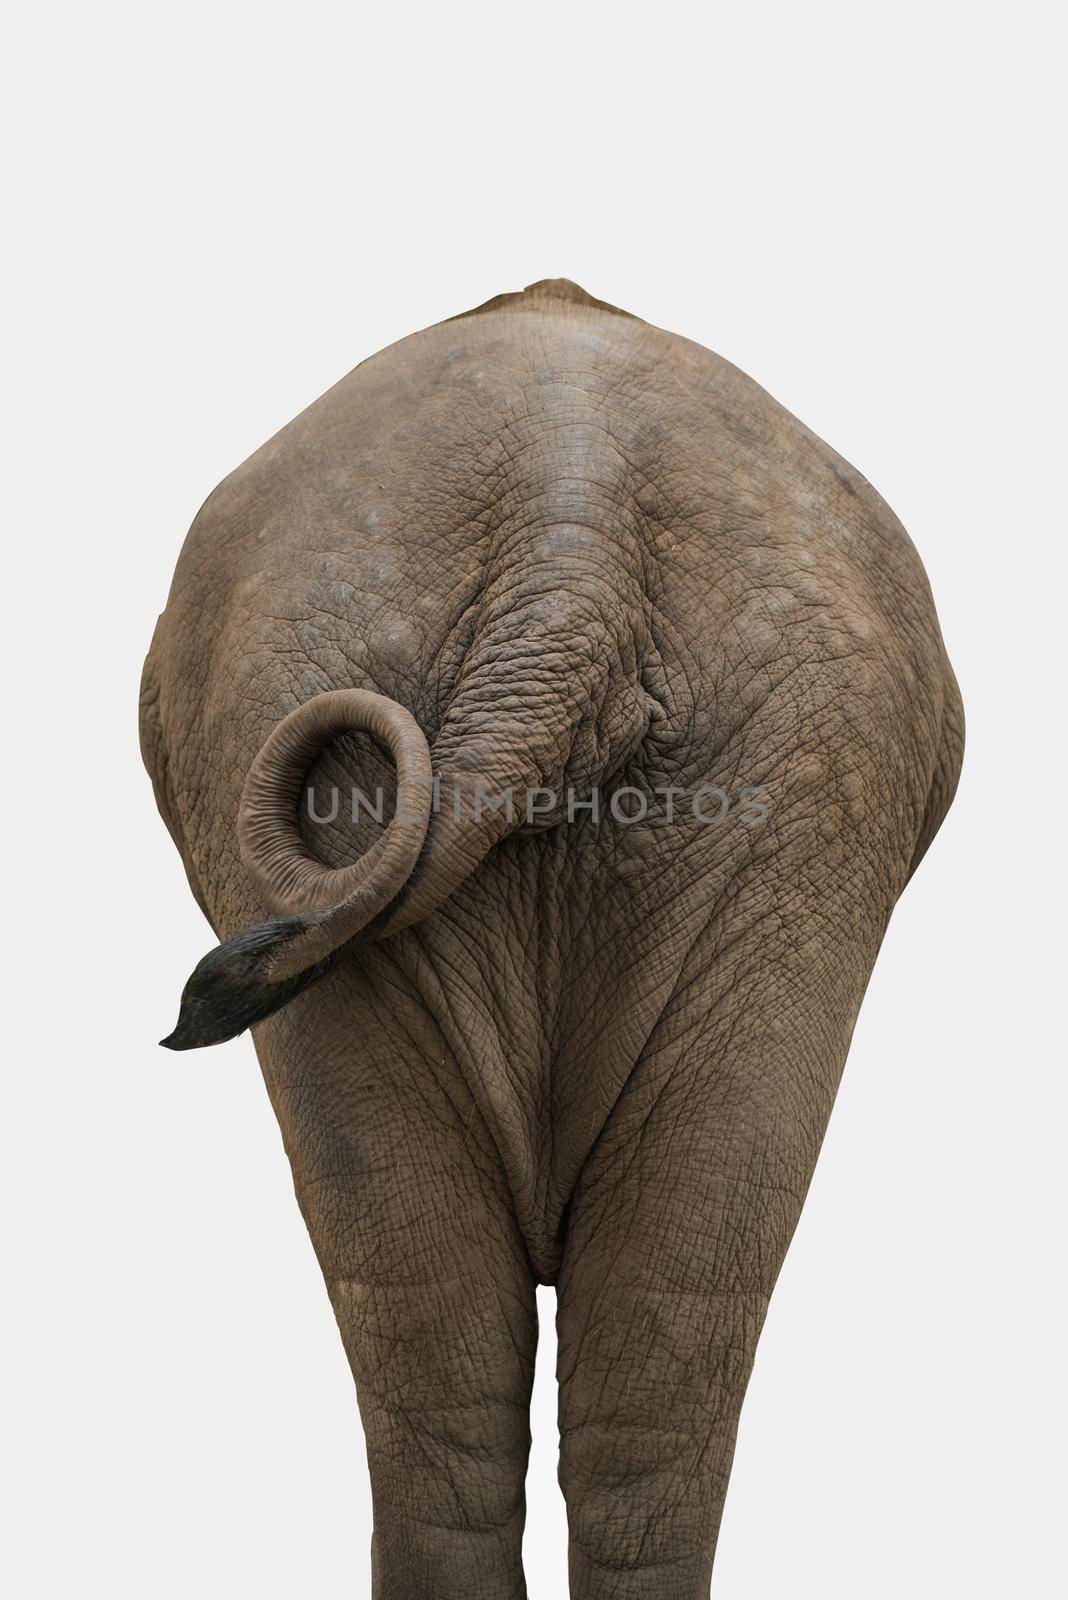 Elephant isolated on white by Wmpix